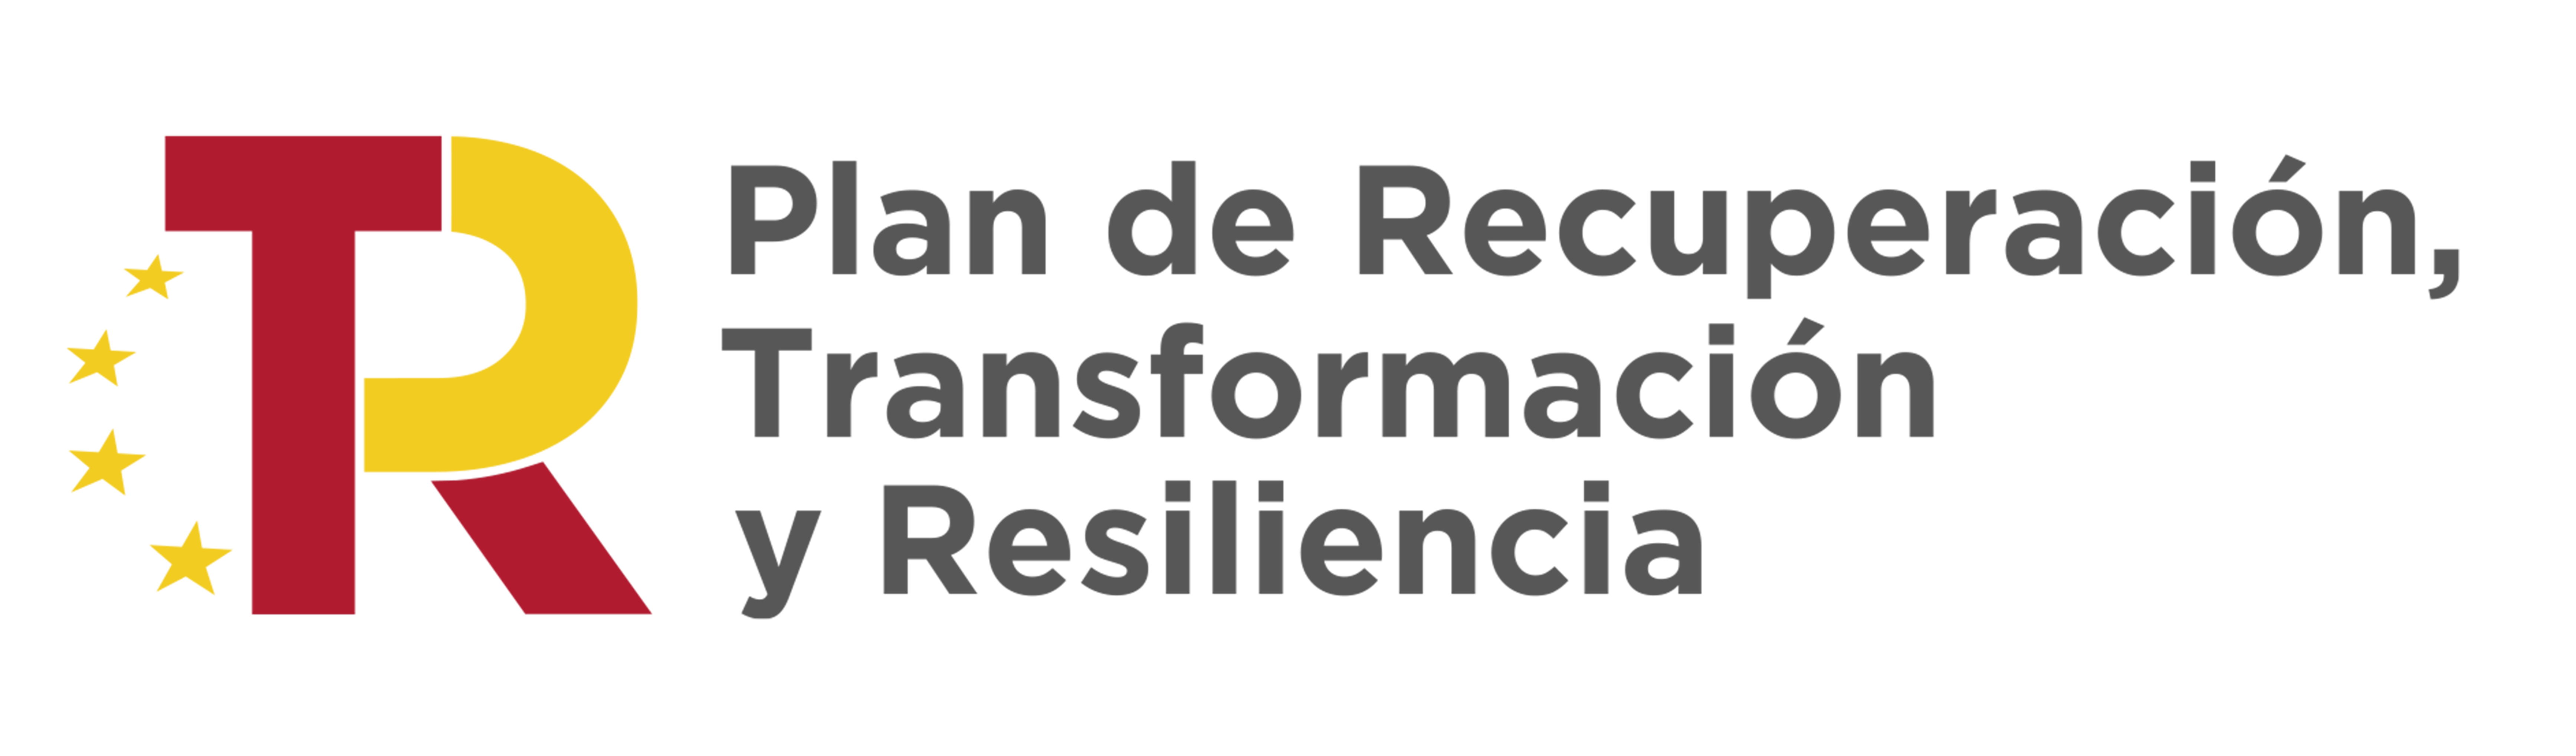 Logo Plan de Recuperación Transformación y Resiliencia